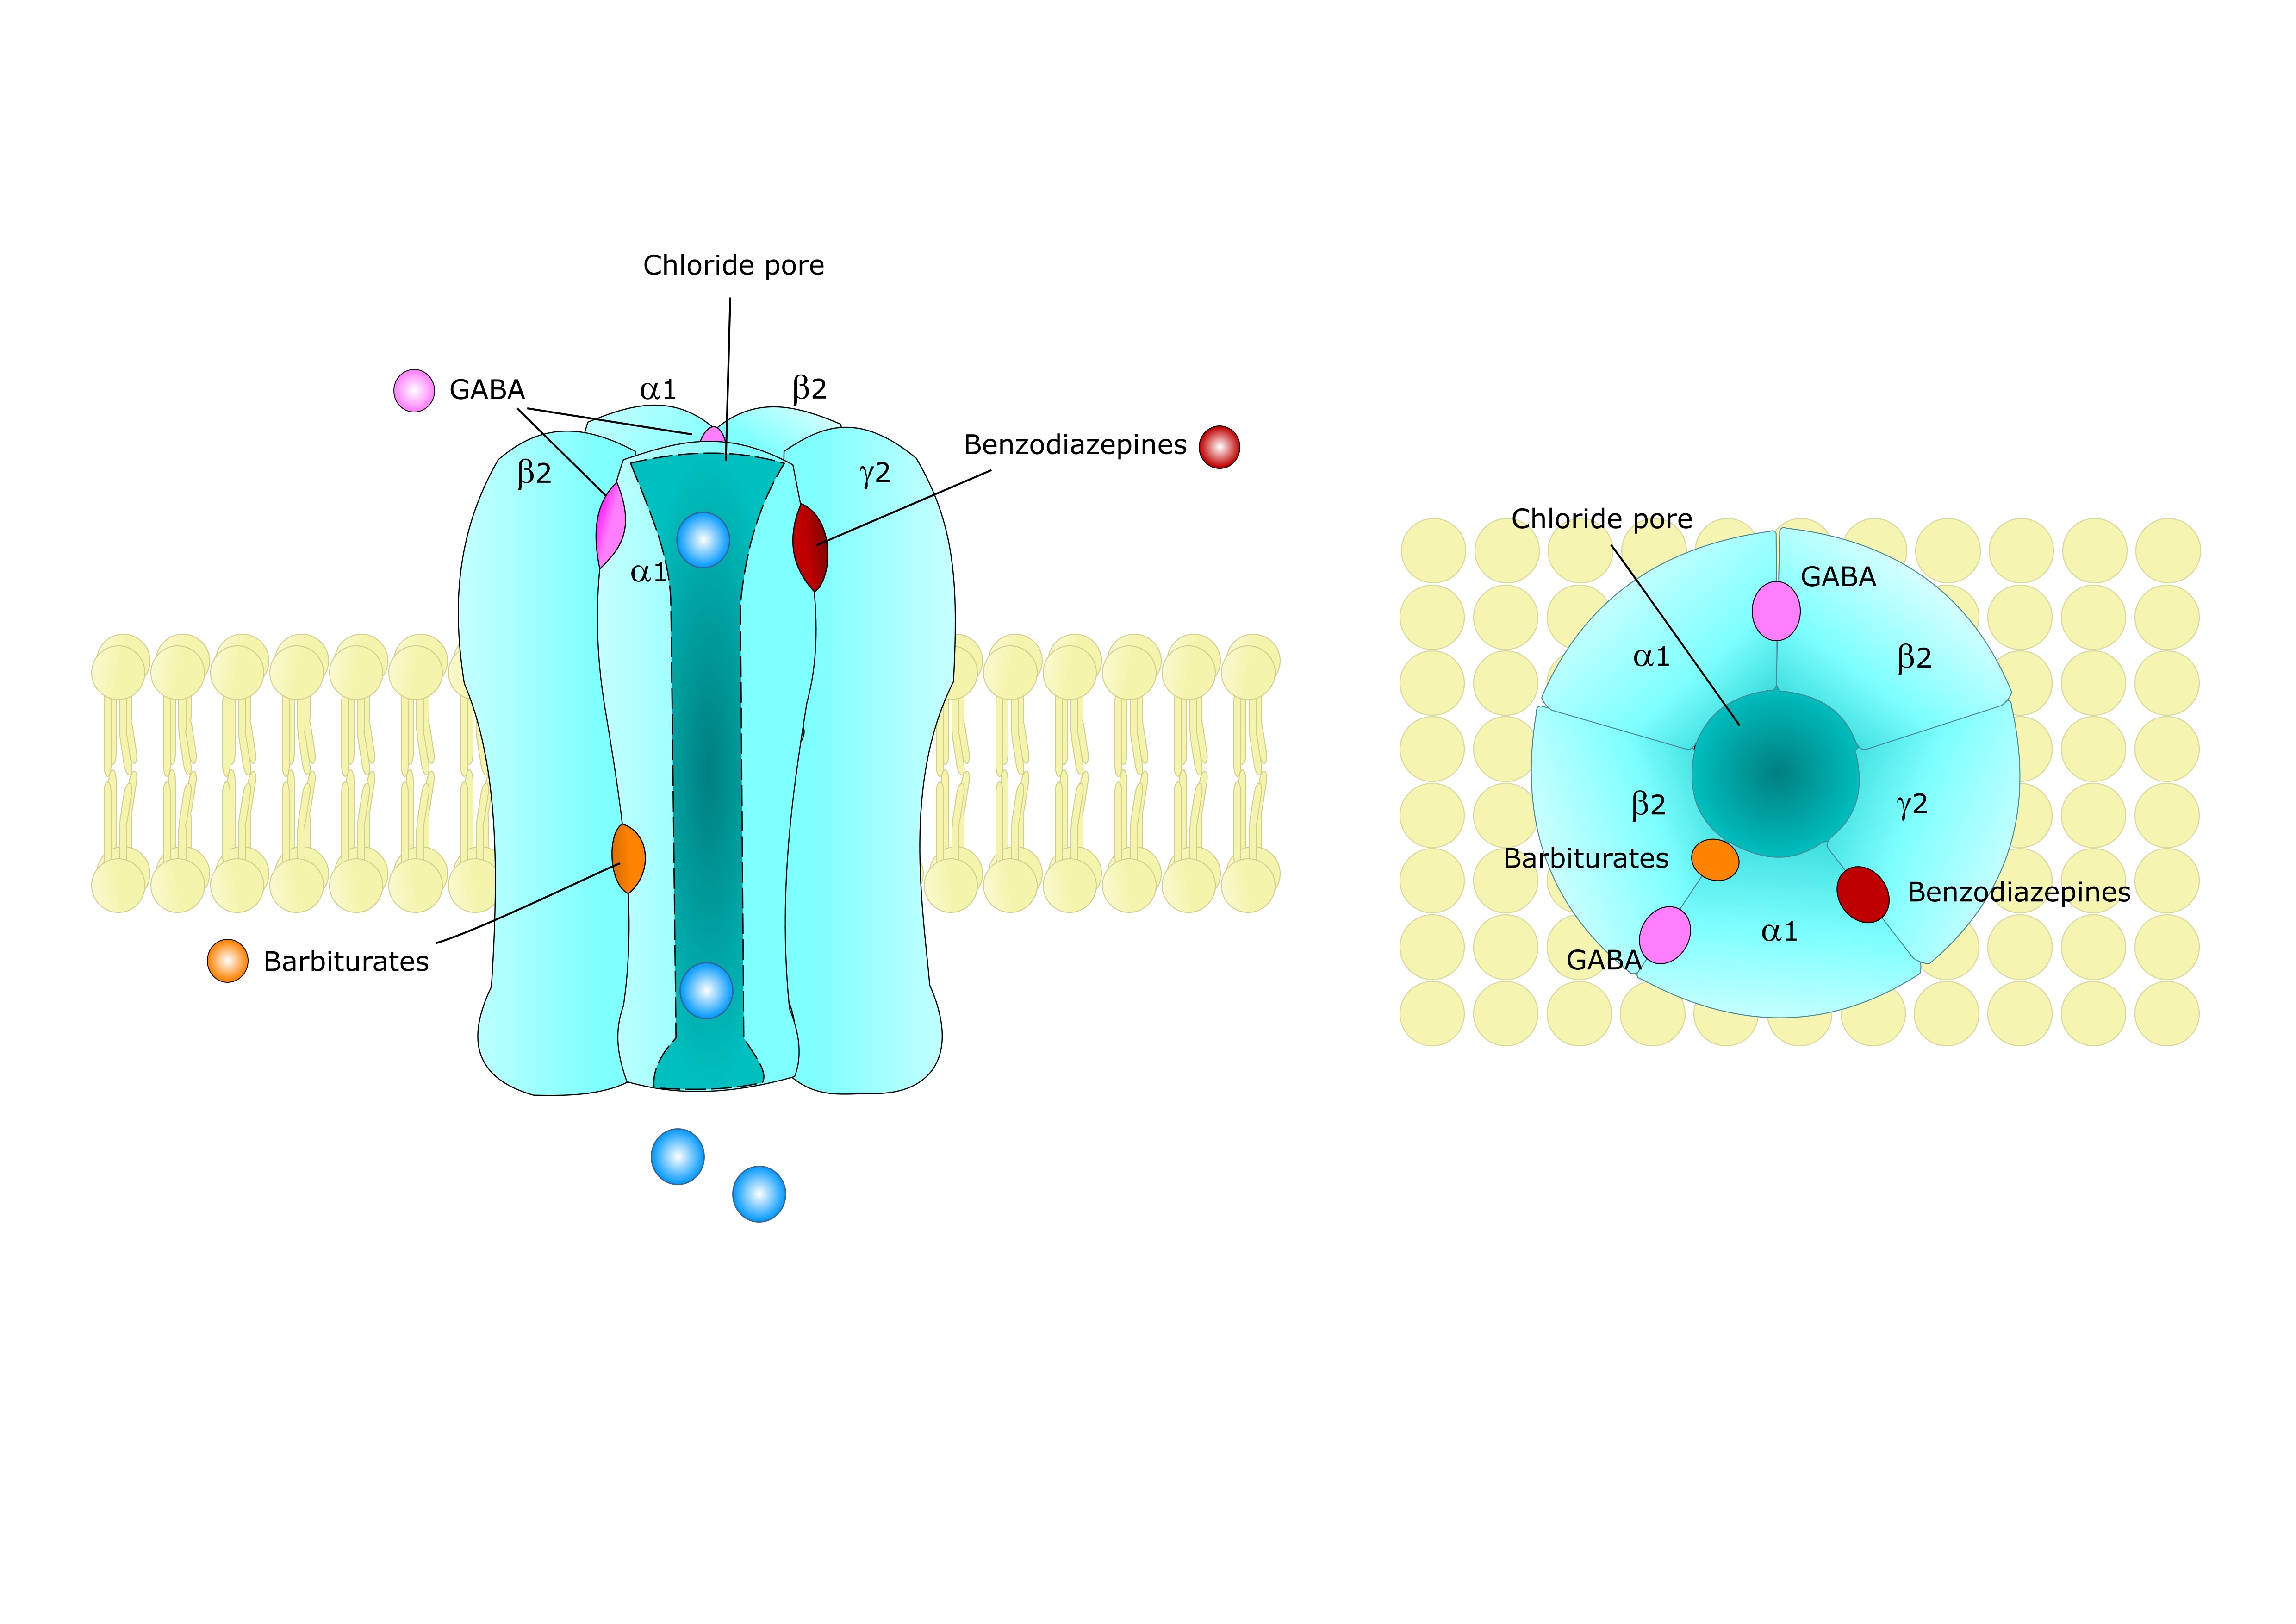 How does GABA receptors look like?